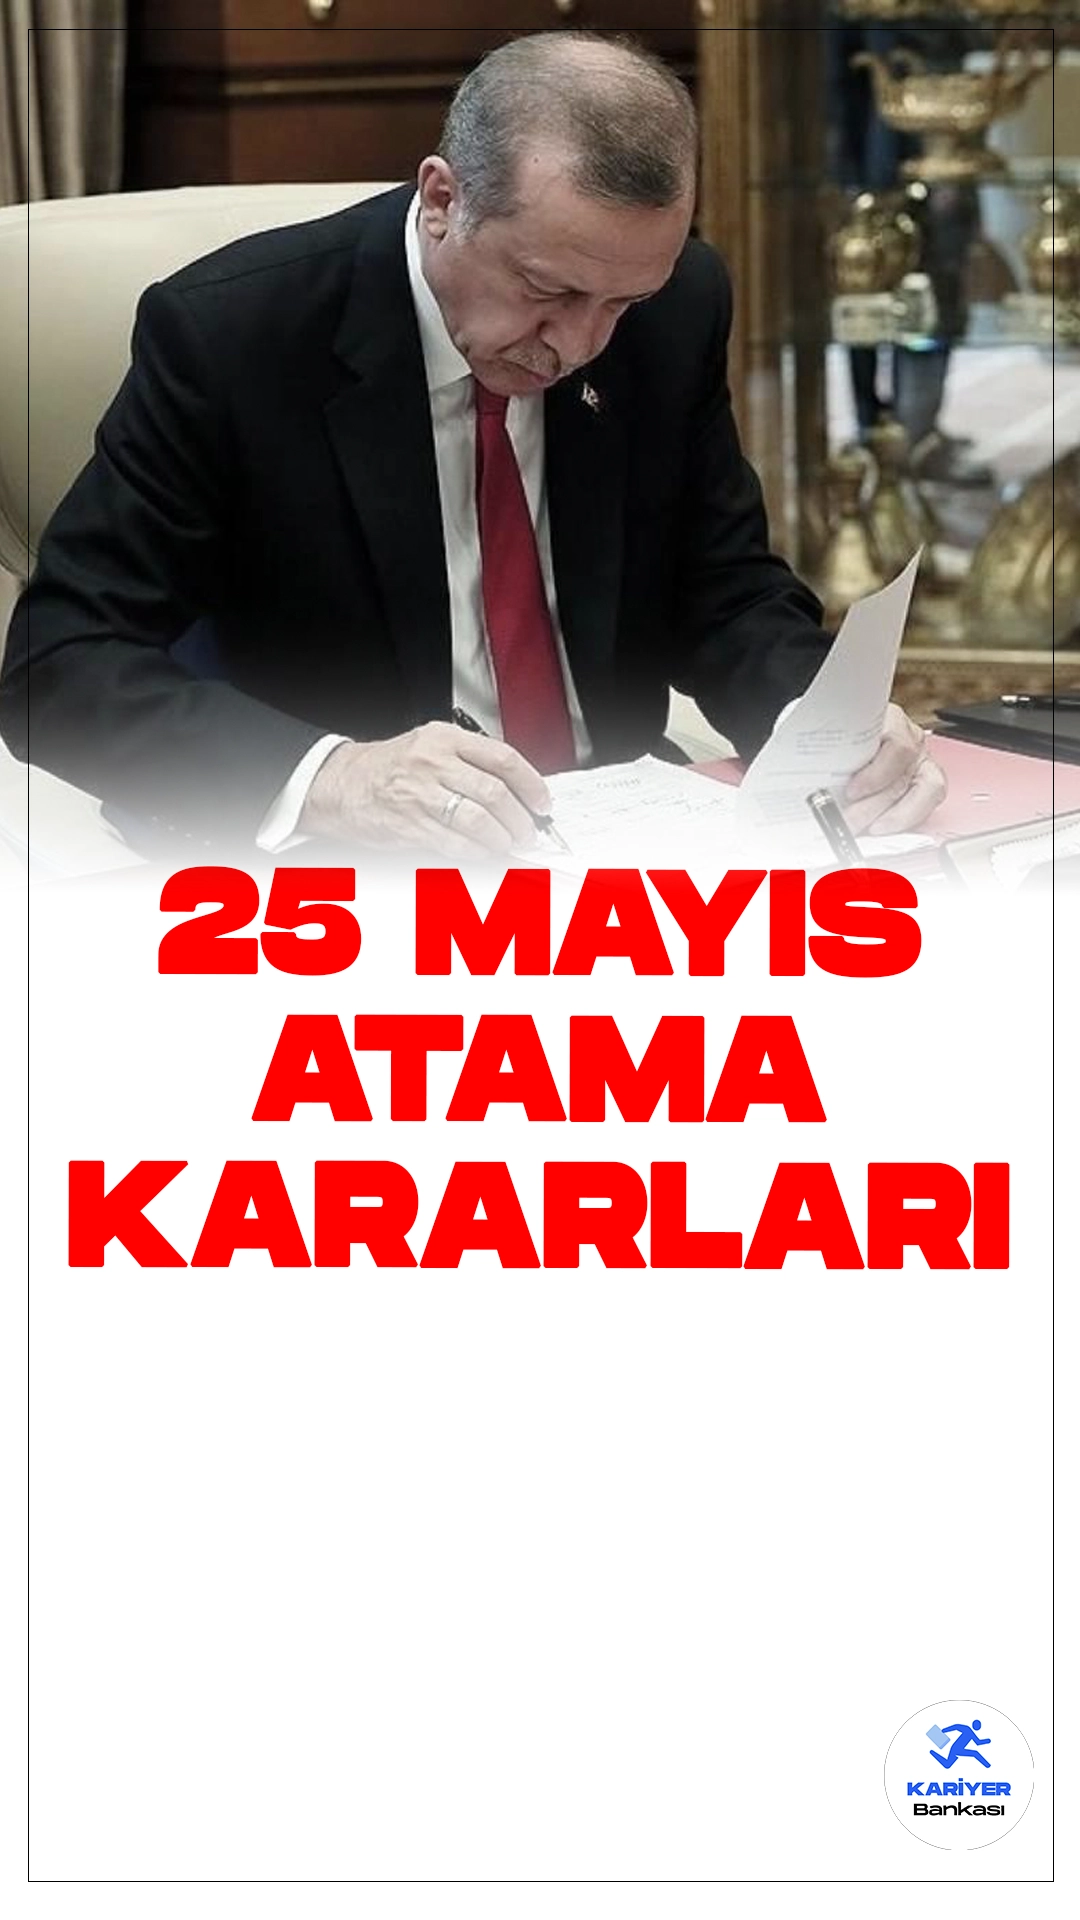 25 Mayıs Atama Kararları Resmi Gazete'de Yayımlandı.Cumhurbaşkanı Recep Tayyip Erdoğan'ın imzasıyla bazı bakanlık ve kamu kurumlarına ilişkin atama ve görevden alma kararları Resmi Gazete'de yayımlandı. Bu kararlar çeşitli bakanlık ve kamu kurumlarında önemli değişiklikleri içeriyor.